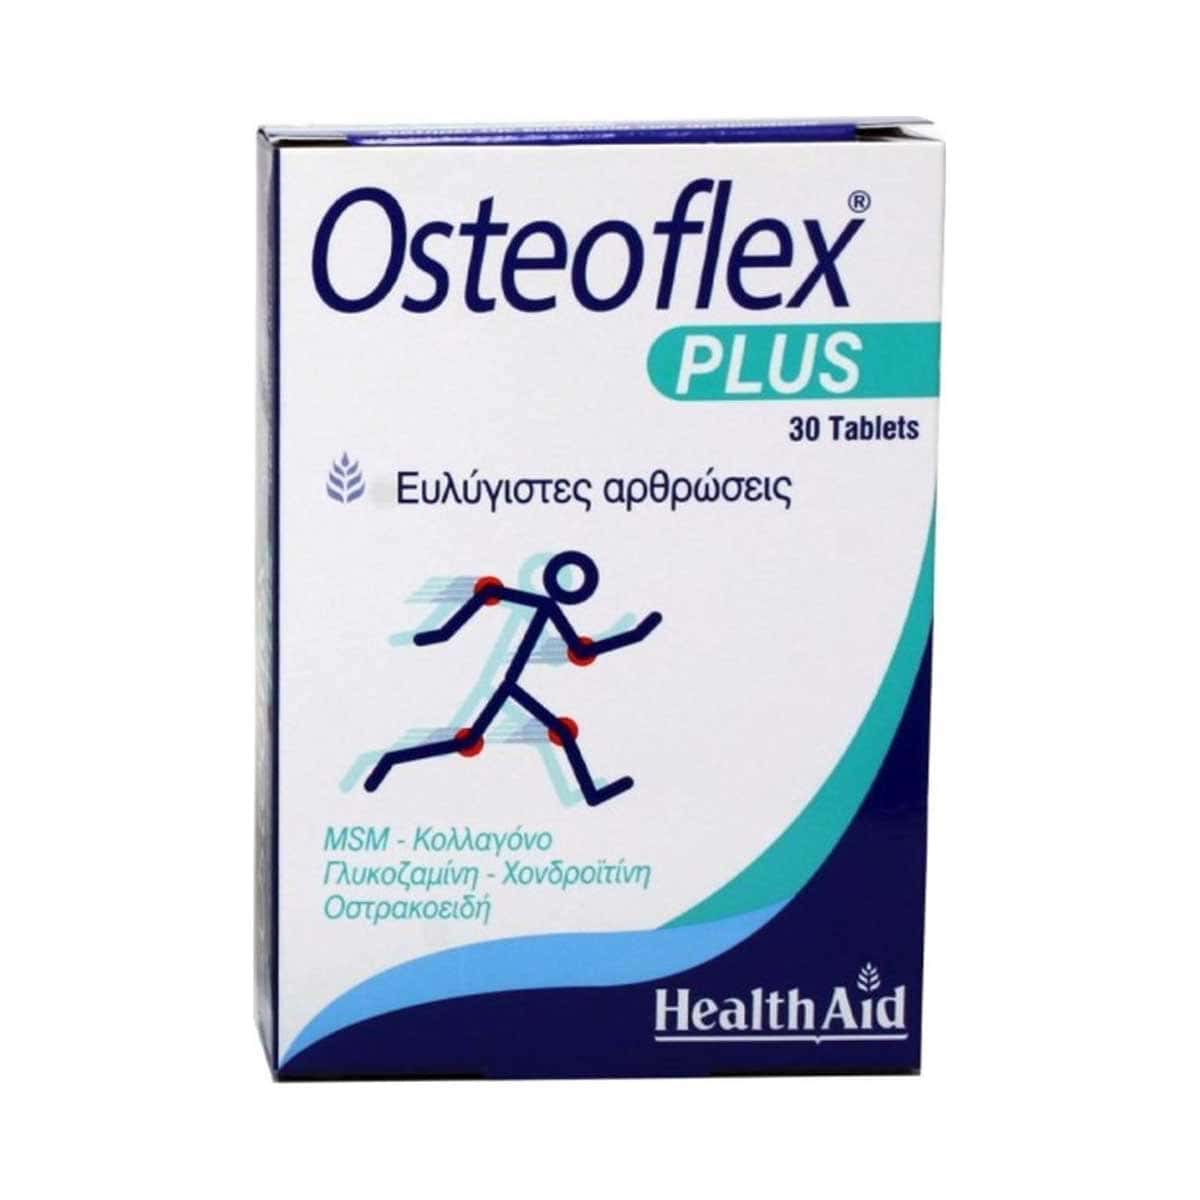 Health-Aid-Osteoflex-Plus-30-tampletes-5019781012459